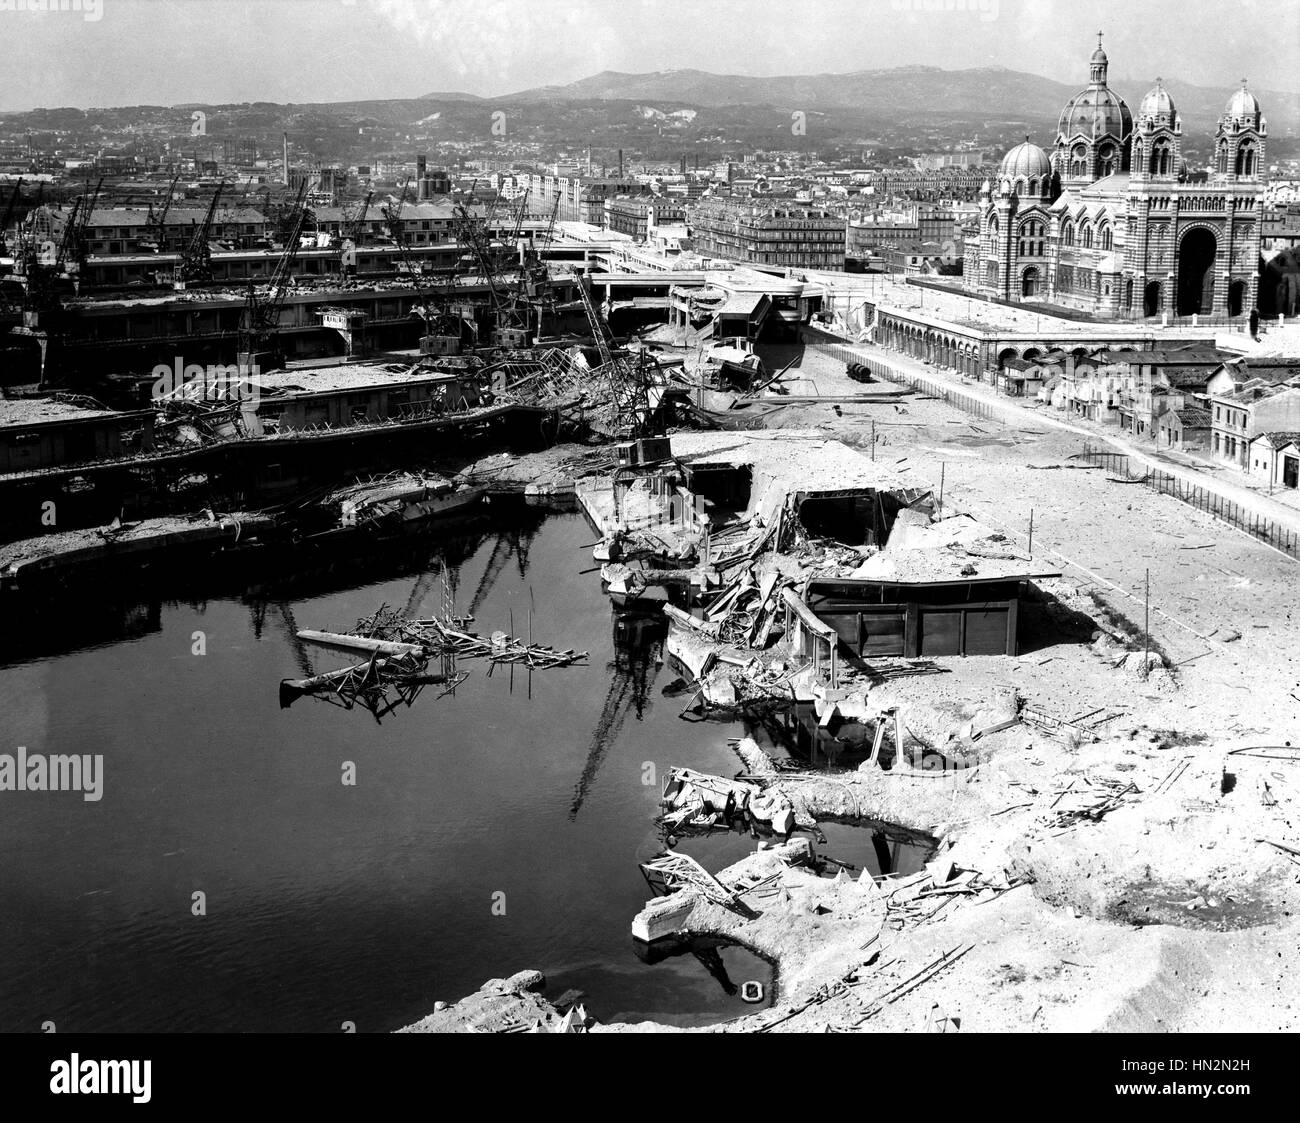 Landungen in Südfrankreich: die Straße Mazenod in Marseille nach einem alliierten Bombenangriff. Kathedrale La Major blieb wie durch ein Wunder, 1944 Frankreich, zweiten Weltkrieg Krieg US Air Force Foto Stockfoto